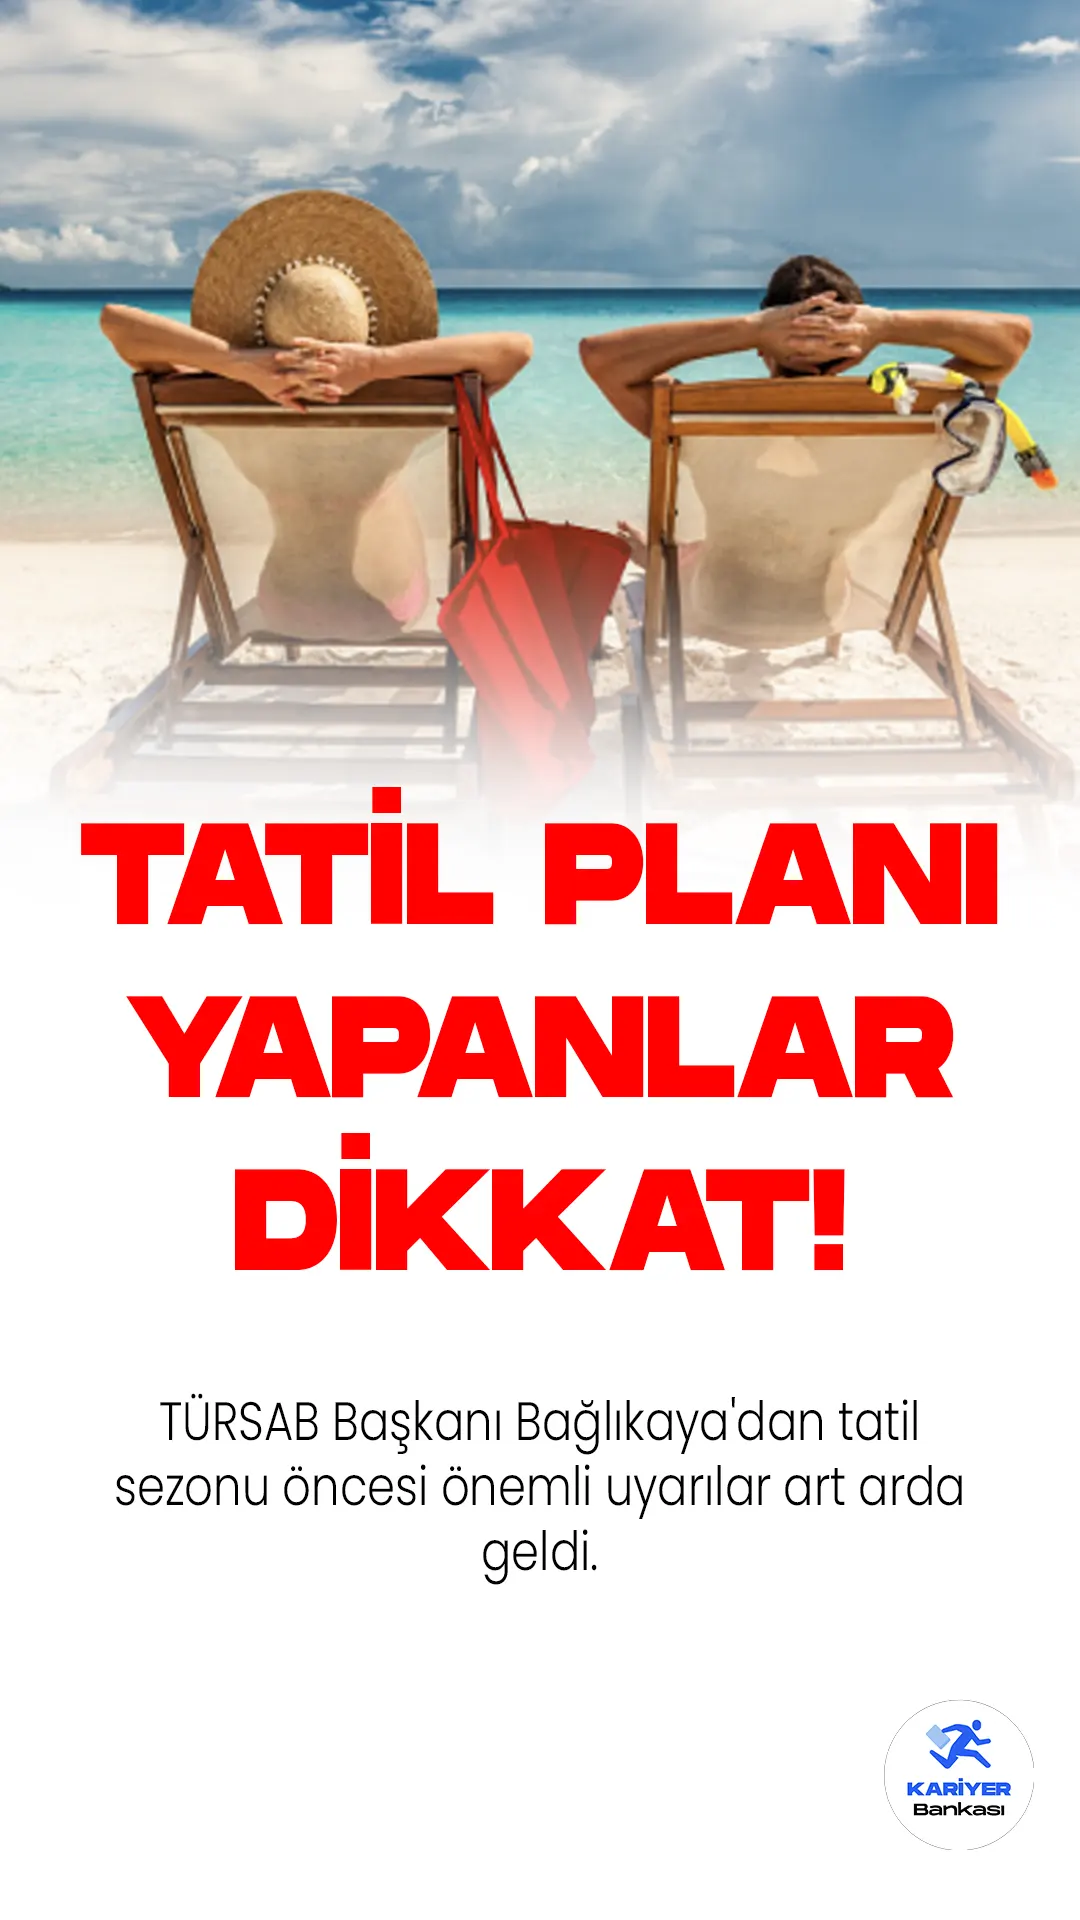 Tatil planı yapanlar dikkat. TÜRSAB Başkanı Bağlıkaya'dan tatil sezonu öncesi önemli uyarılar art arda geldi.